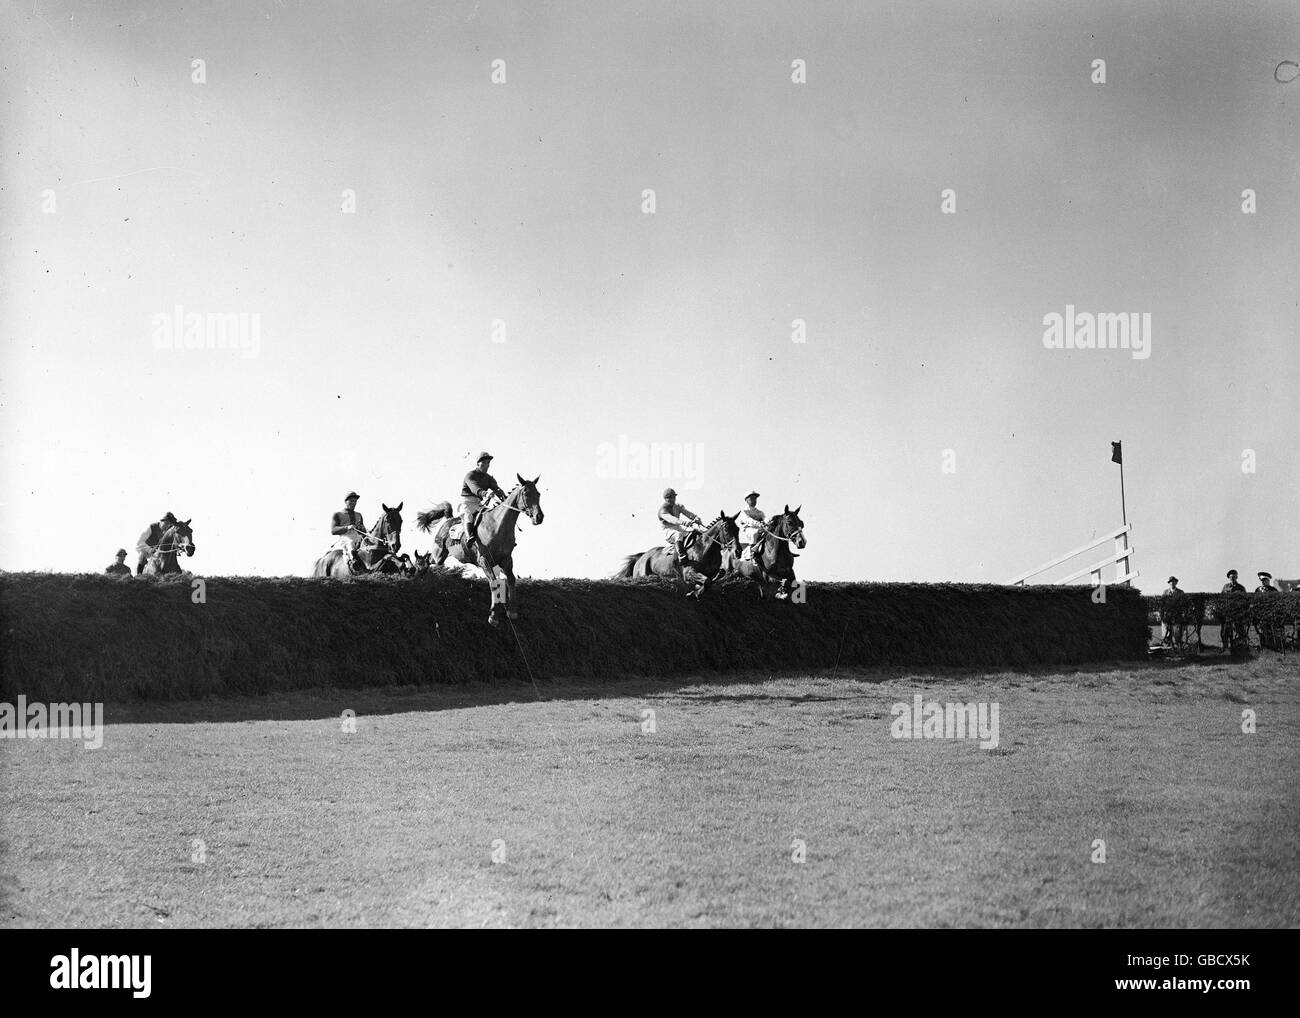 Corse di cavalli - Il Grand National - L'Aintree - 1946 Foto Stock